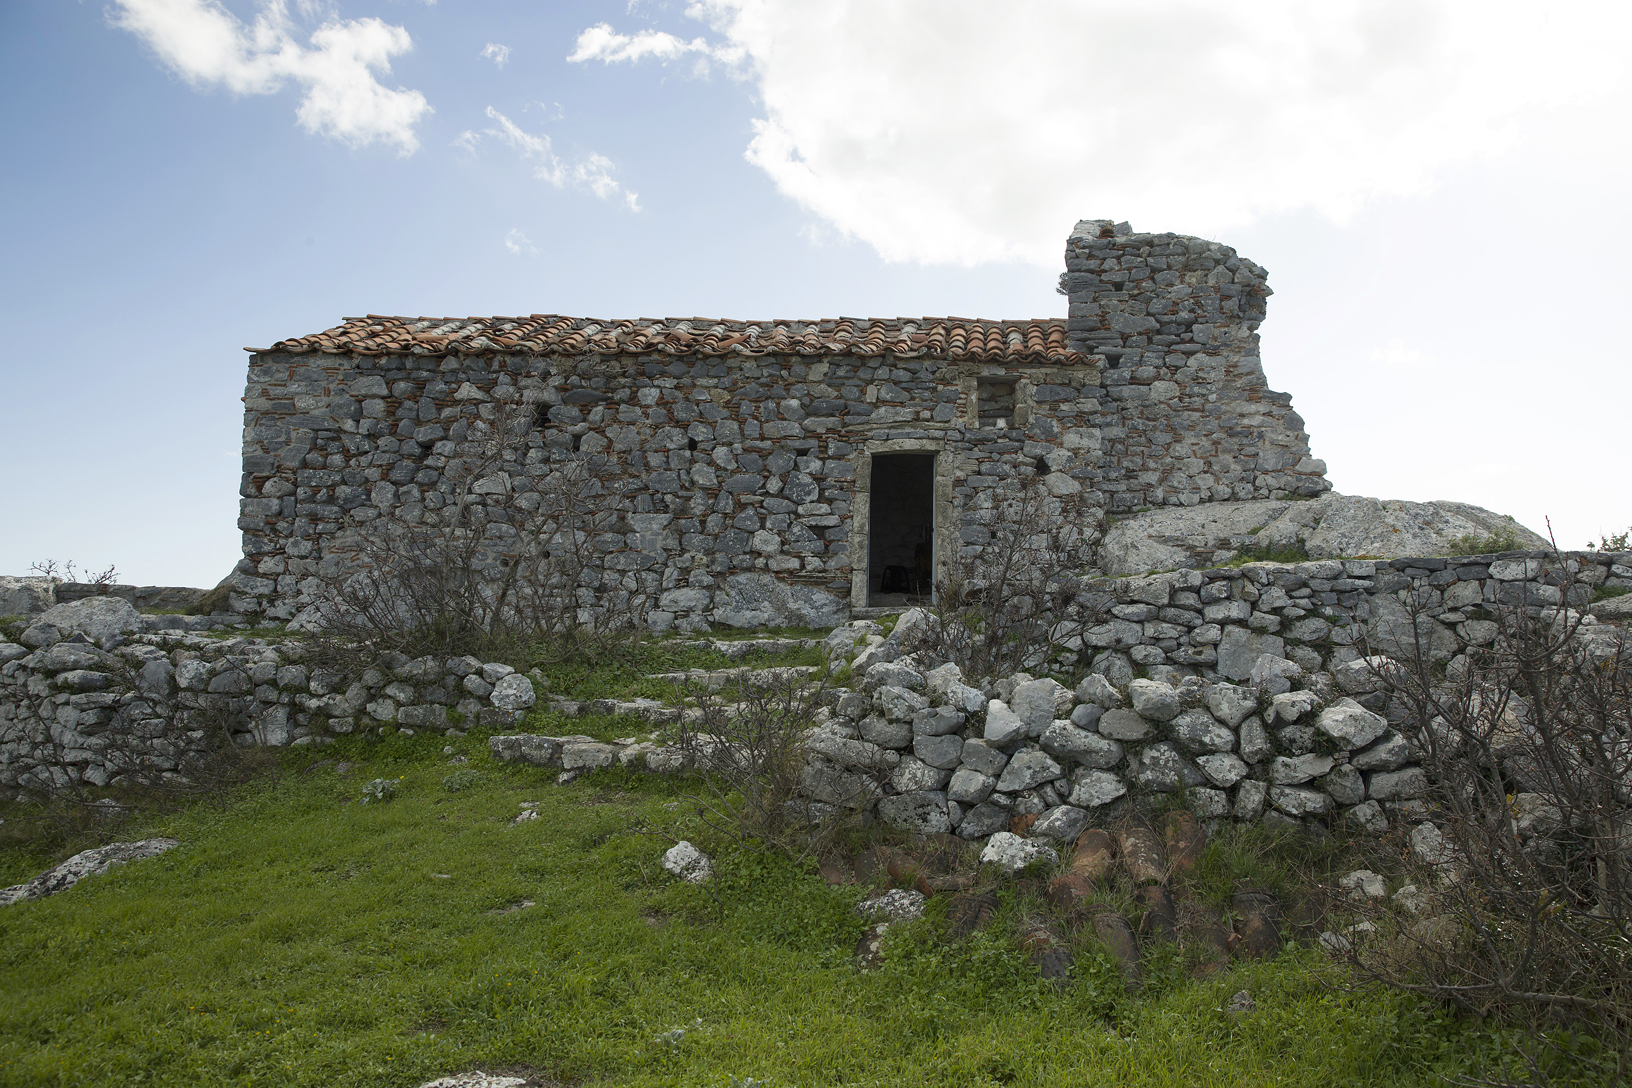 Ναός Παναγίας στο Κάστρο Ποτήρι, χωριό Αυλωνάρι. Φωτογραφία: ©Βασίλης Συκάς, για τον Δήμο Κύμης-Αλιβερίου